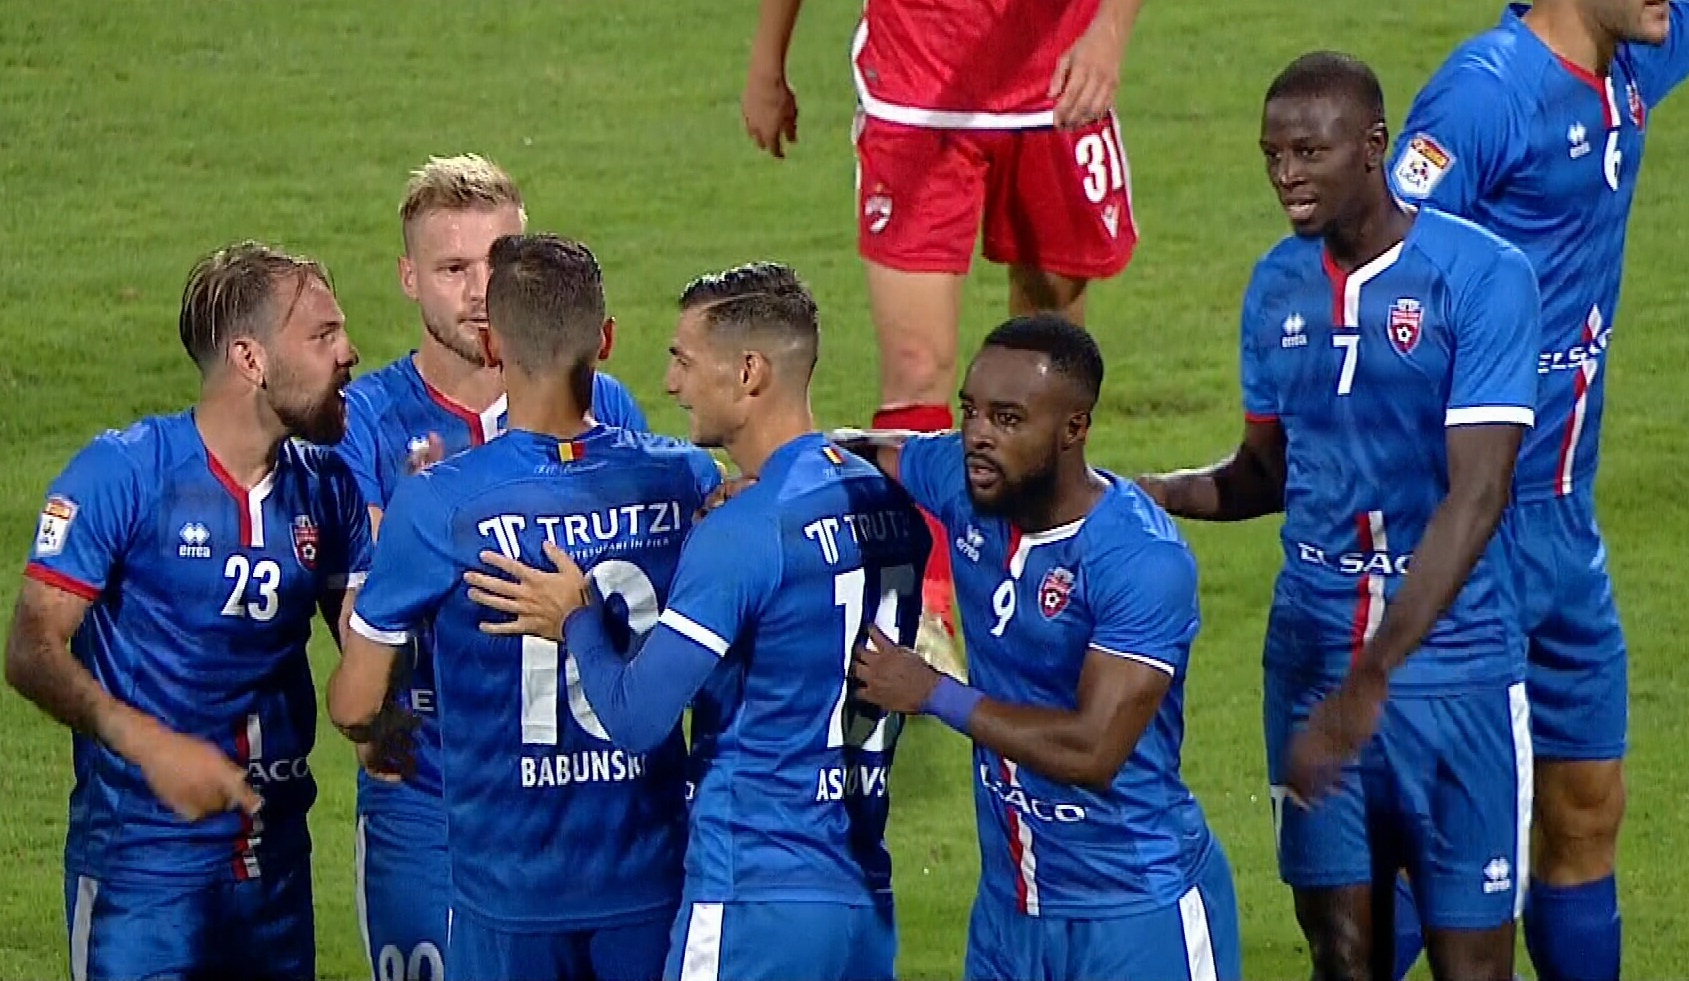 Dinamo - FC Botoșani 1-1, ACUM, pe Digi Sport 1. Borja Valle egalează cu o execuție formidabilă